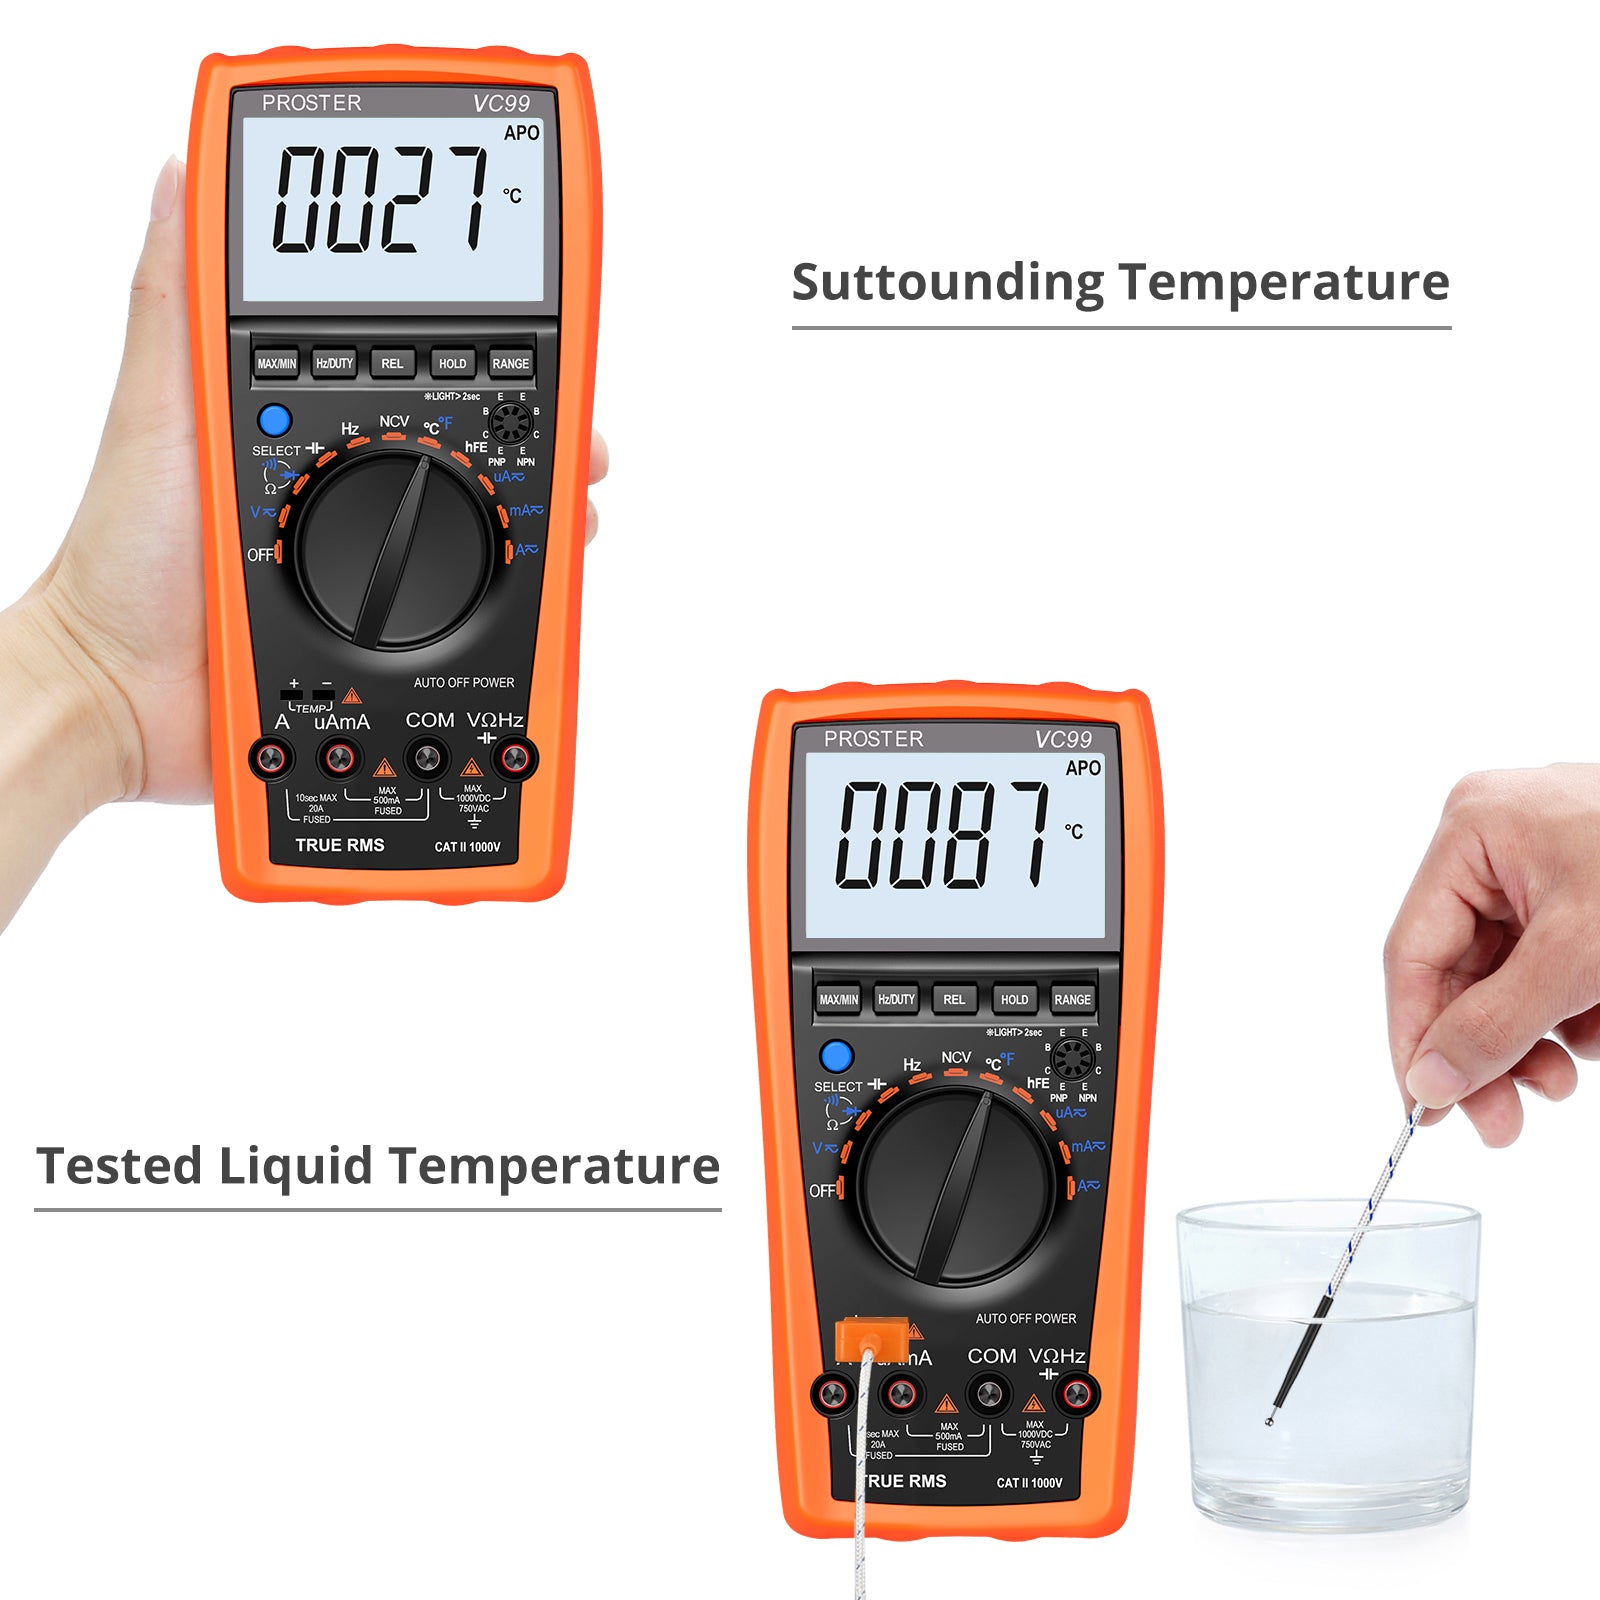 Proster Auto-Ranging 5999 Digital Multimeter with Temperature Measurement